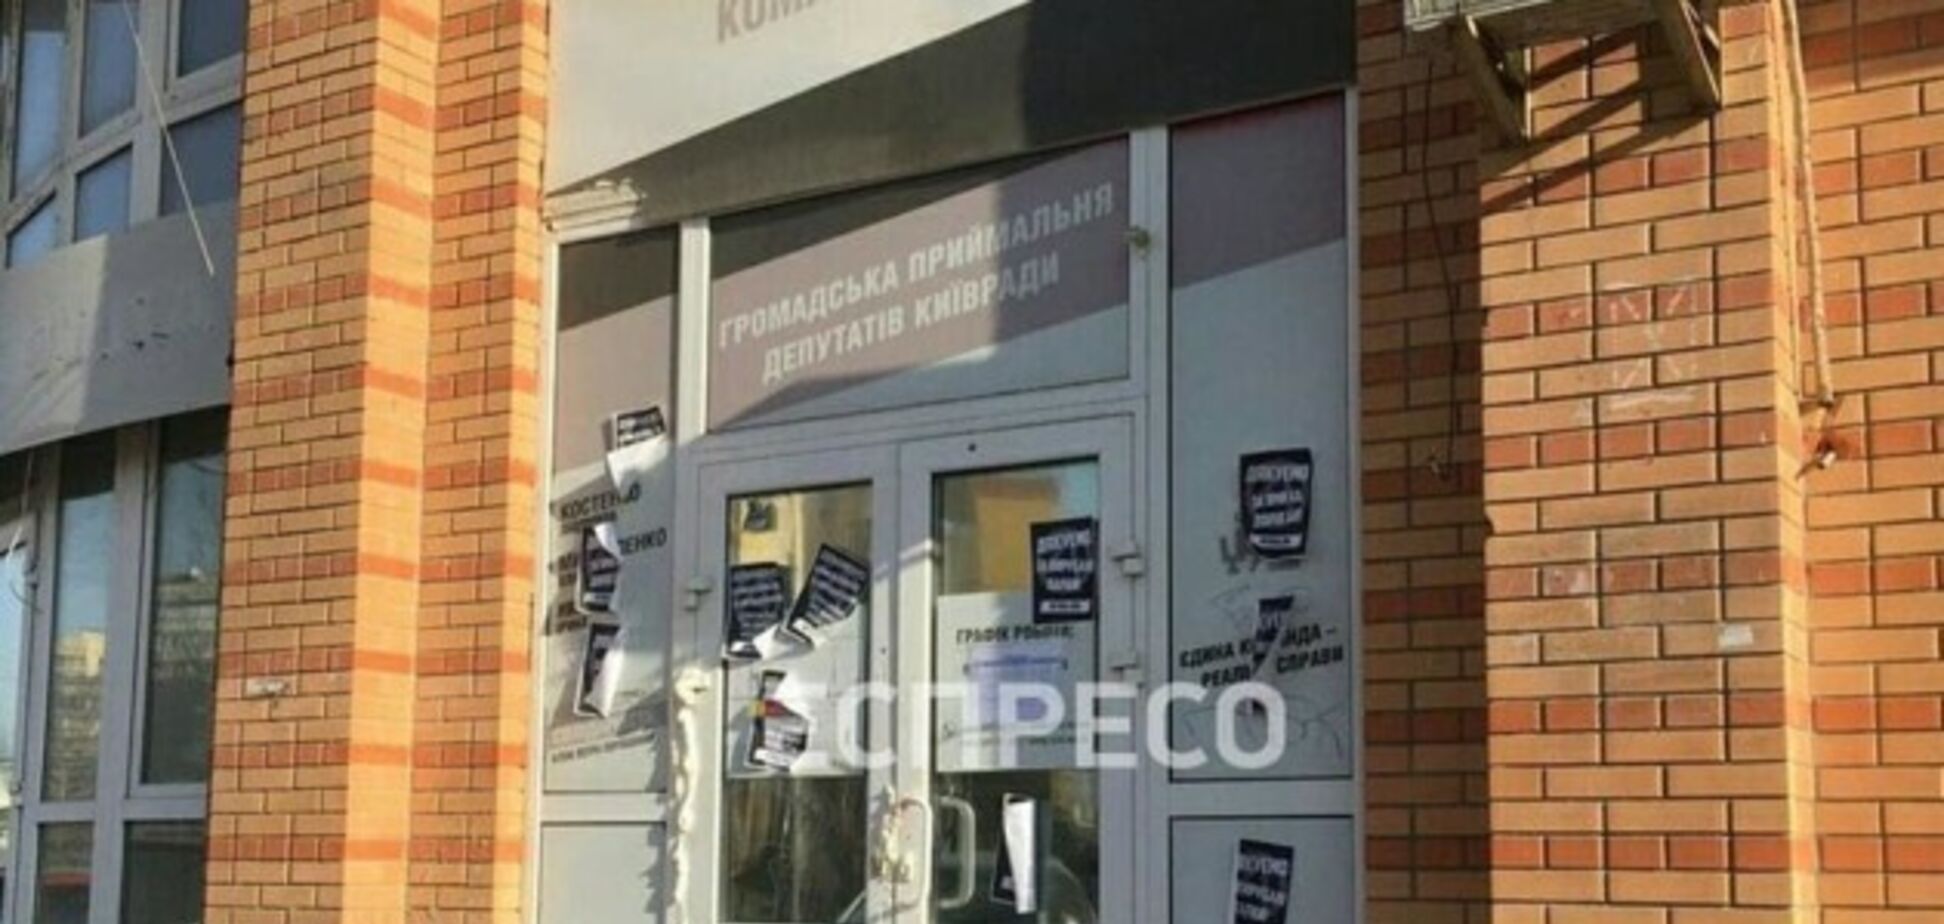 Двері приймальні депутатів Київради залили монтажною піною